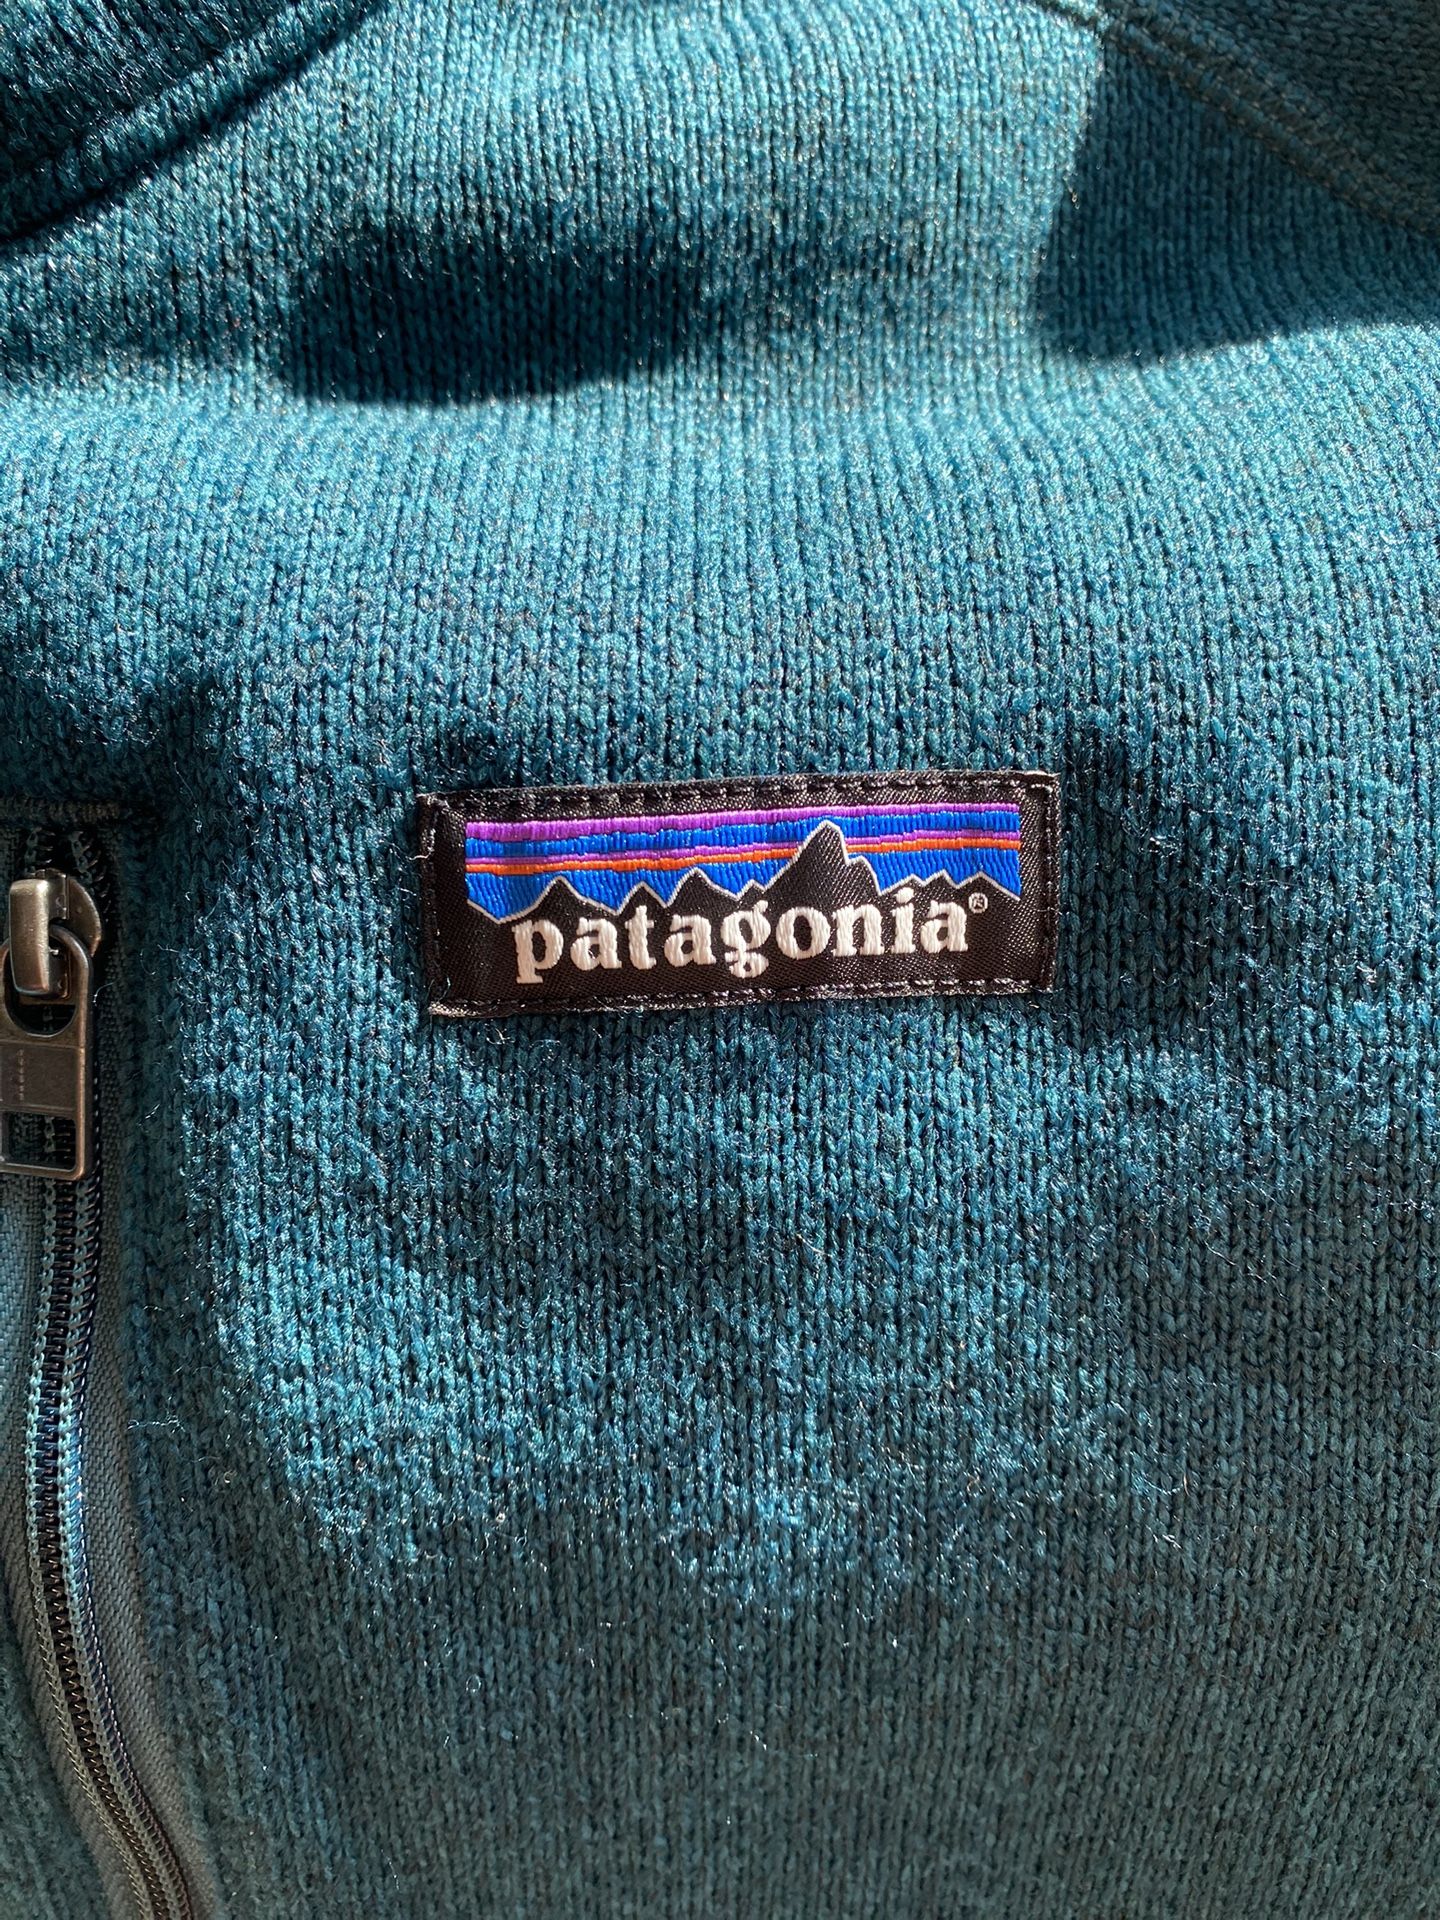 New Patagonia Men’s Jacket Medium